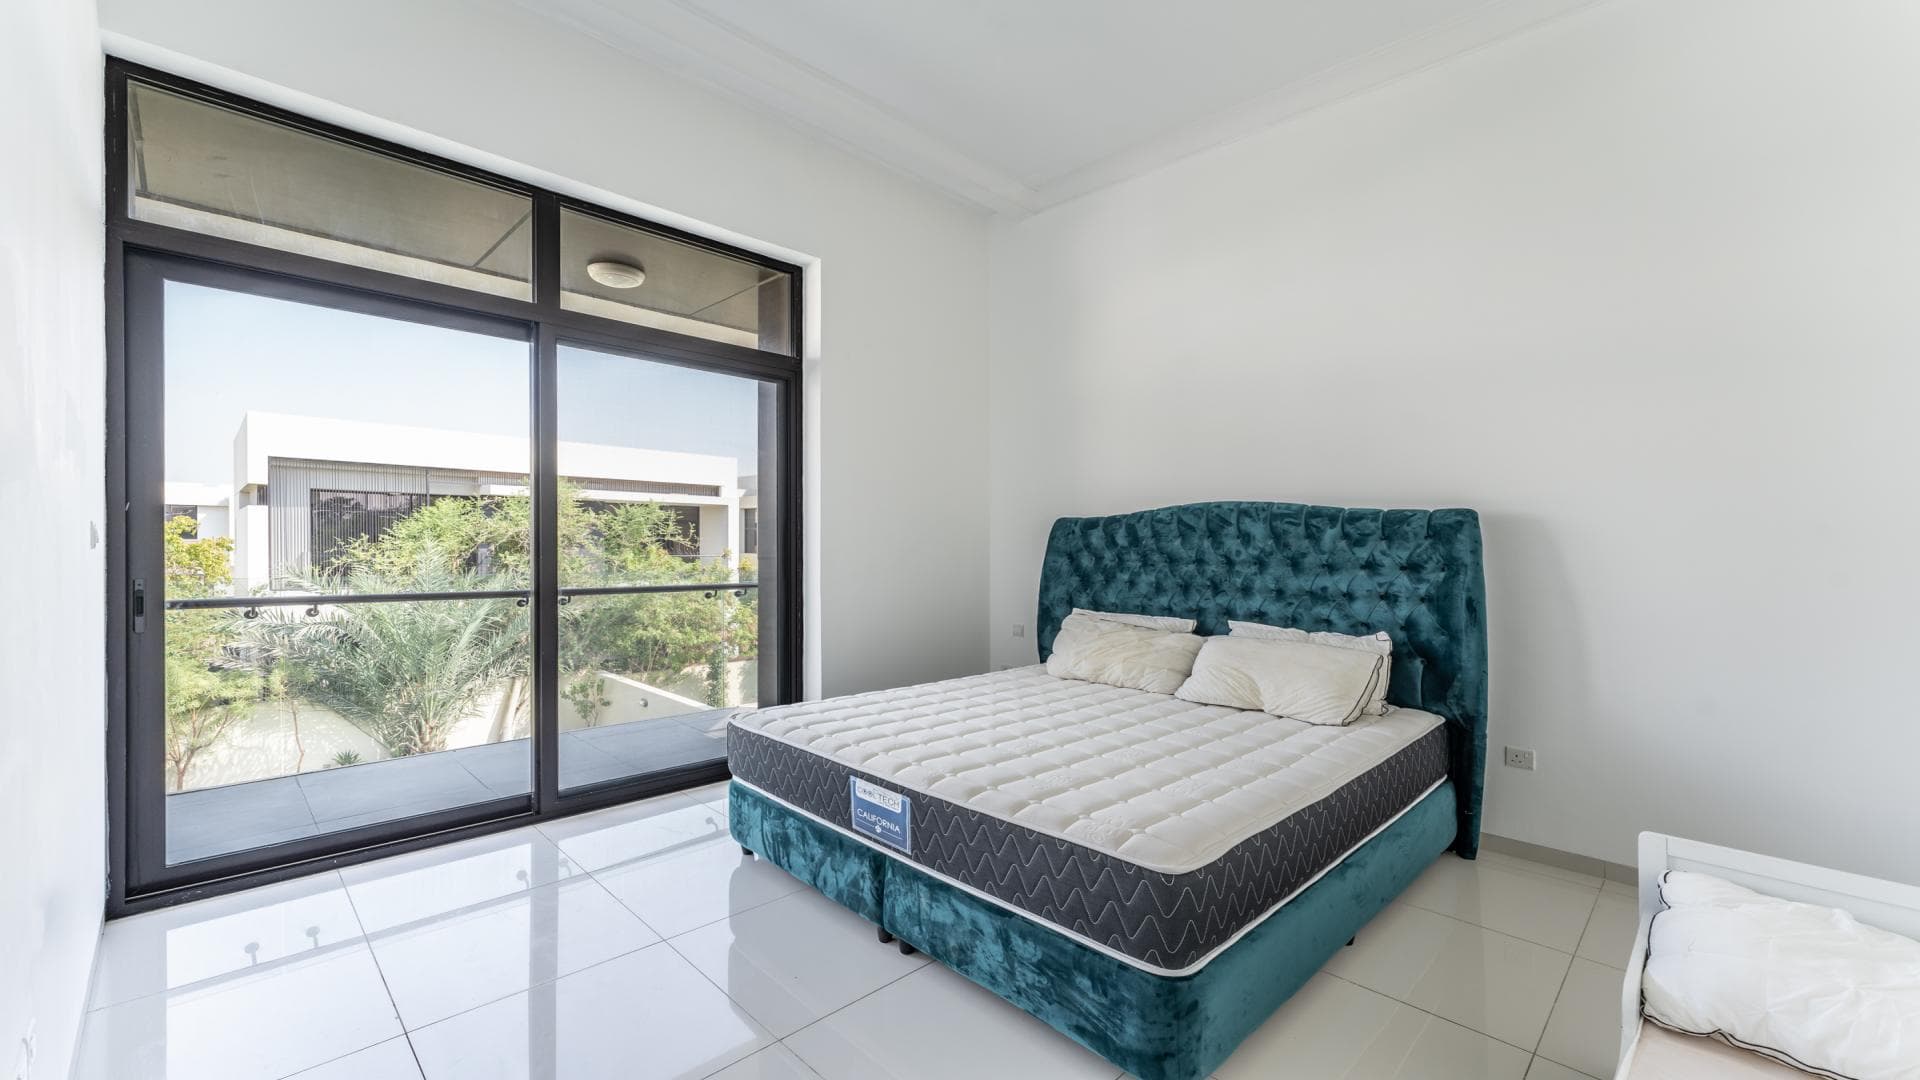 5 Bedroom Villa For Rent  Lp36801 2c6744a8a97a0400.jpg